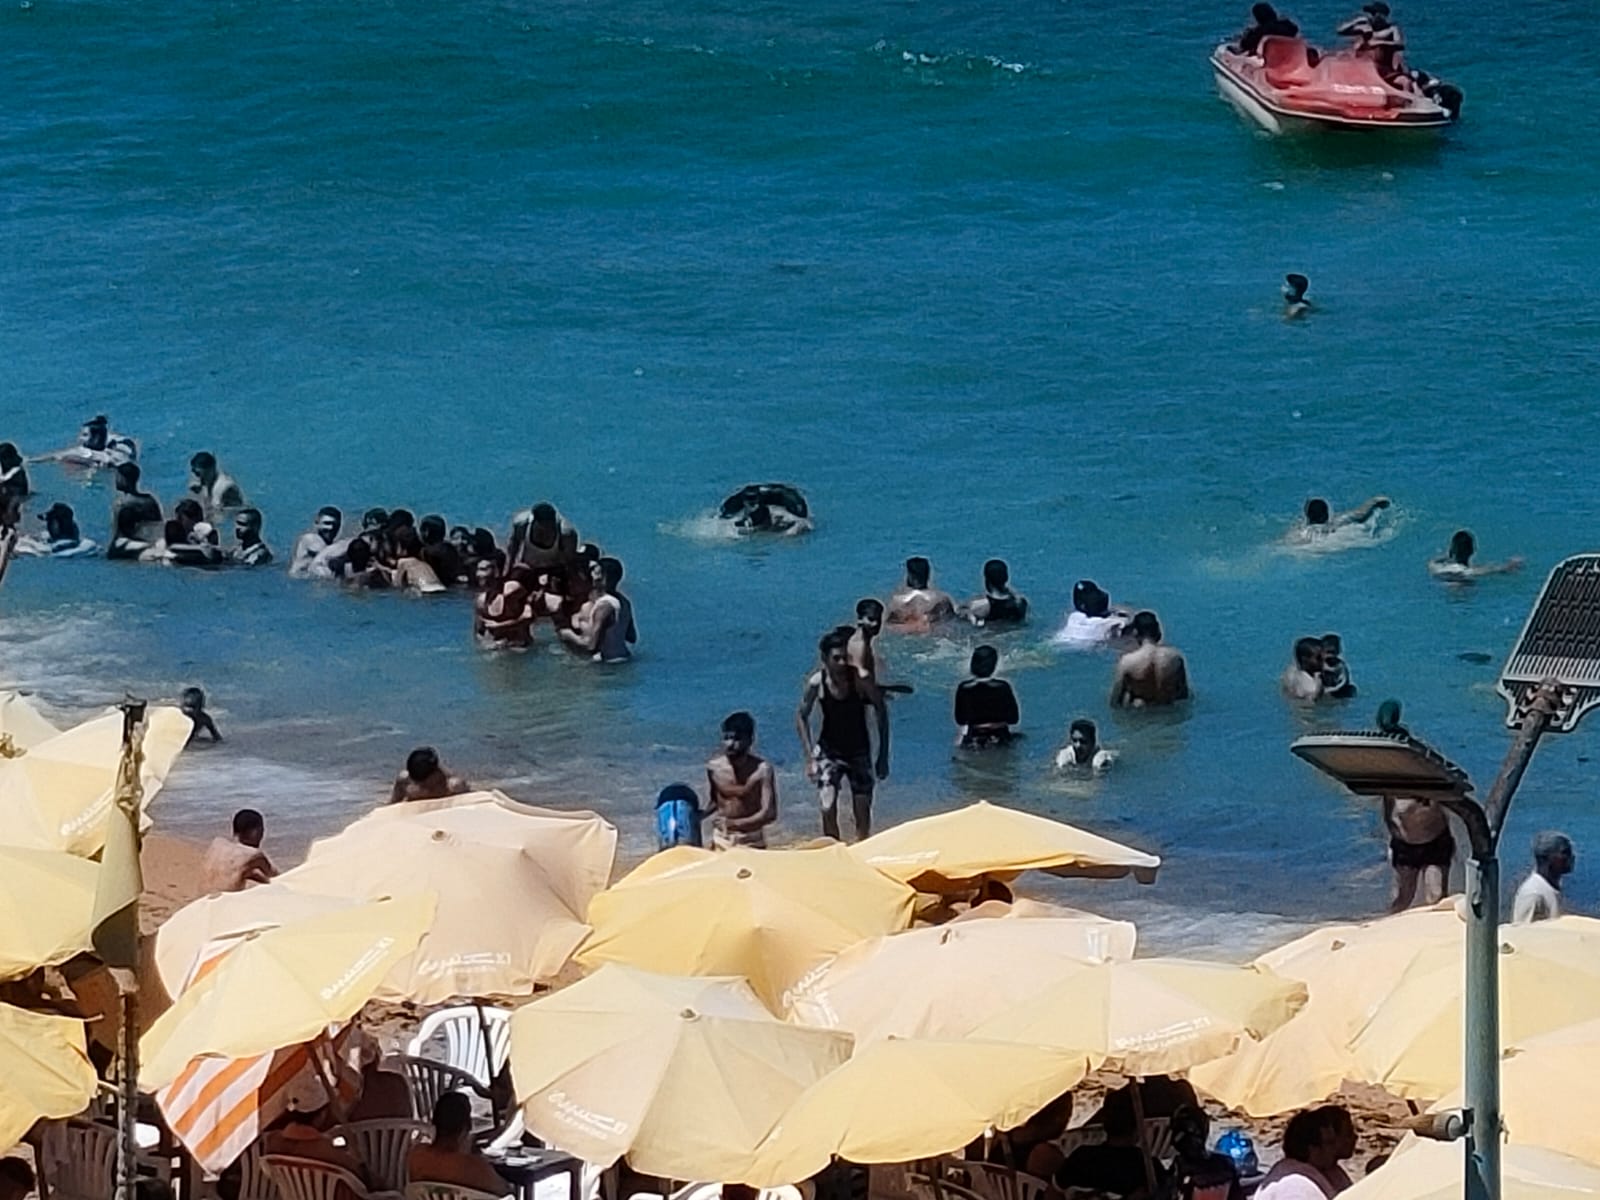 هروب الأسر على شواطئ الإسكندرية للاستمتاع بالمصيف (4)